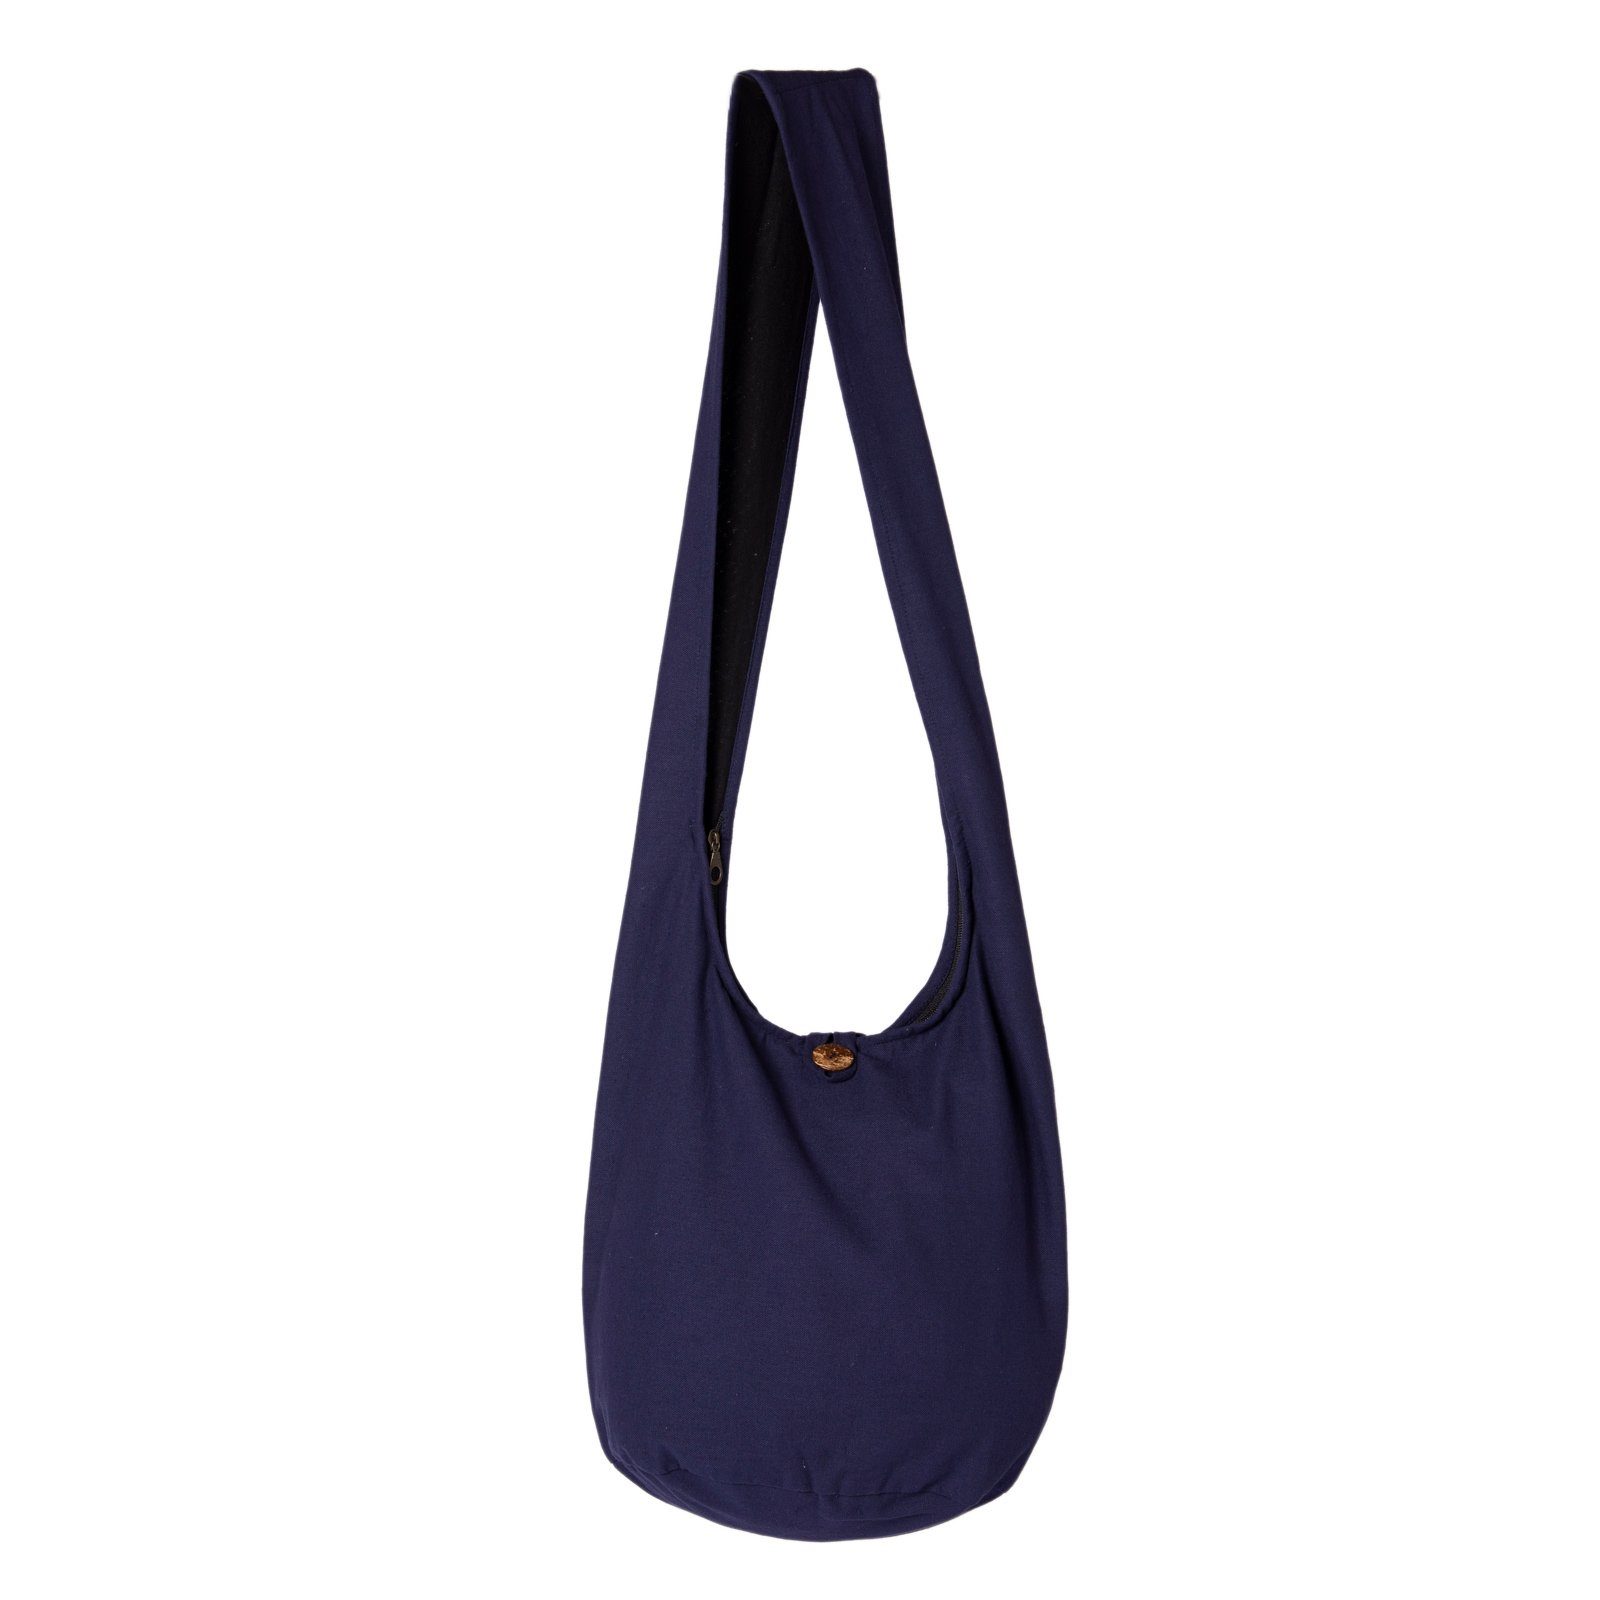 PANASIAM Beuteltasche Schulterbeutel einfarbig Schultertasche aus 100% Baumwolle in 2 Größen, Umhängetasche auch als Wickeltasche Handtasche oder Strandtasche dunkel blau